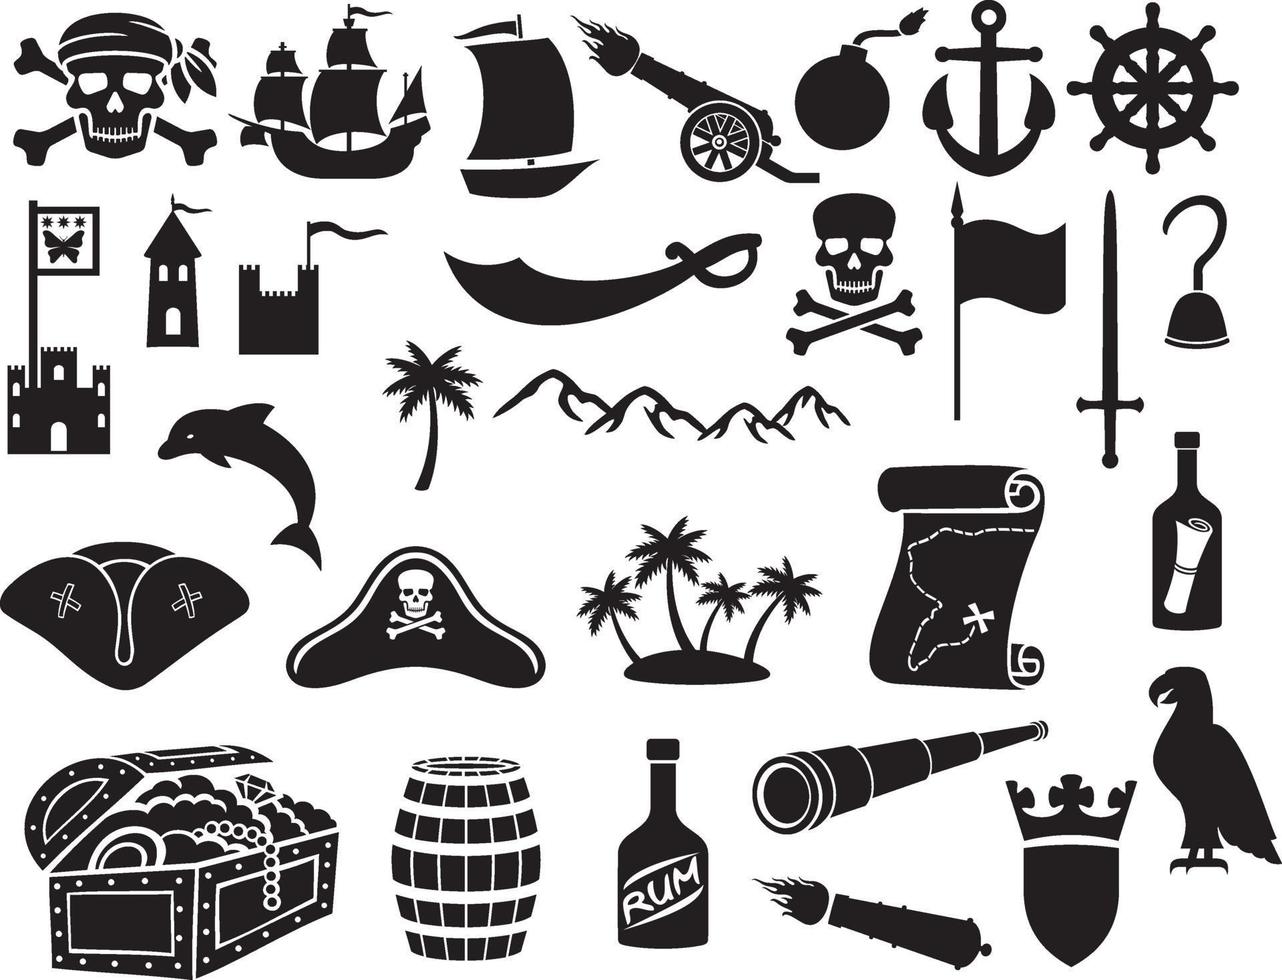 conjunto de ícones de piratas vetor